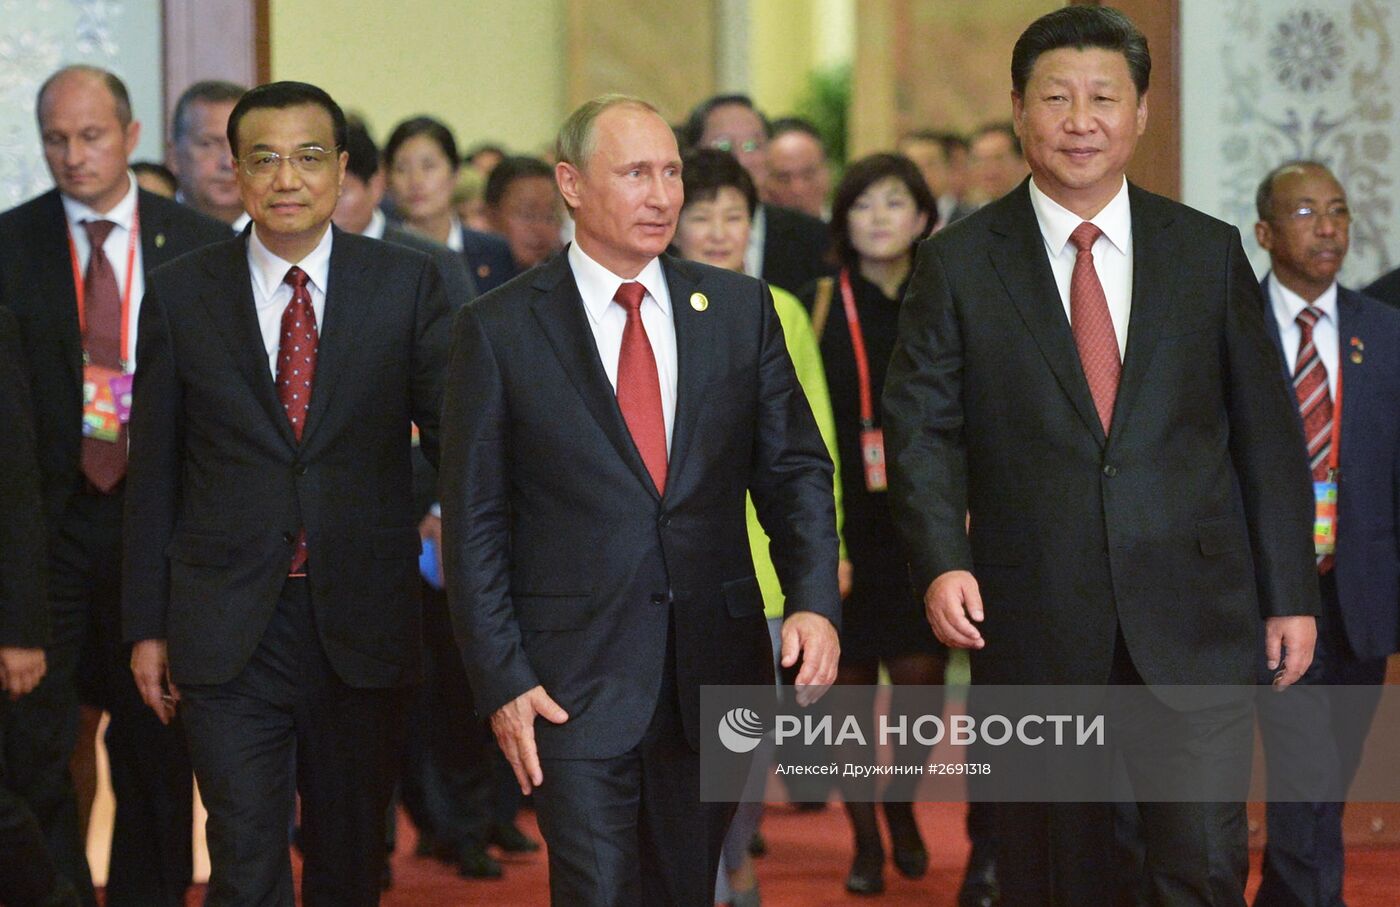 Визит президента РФ В.Путина в Китайскую Народную Республику. День второй